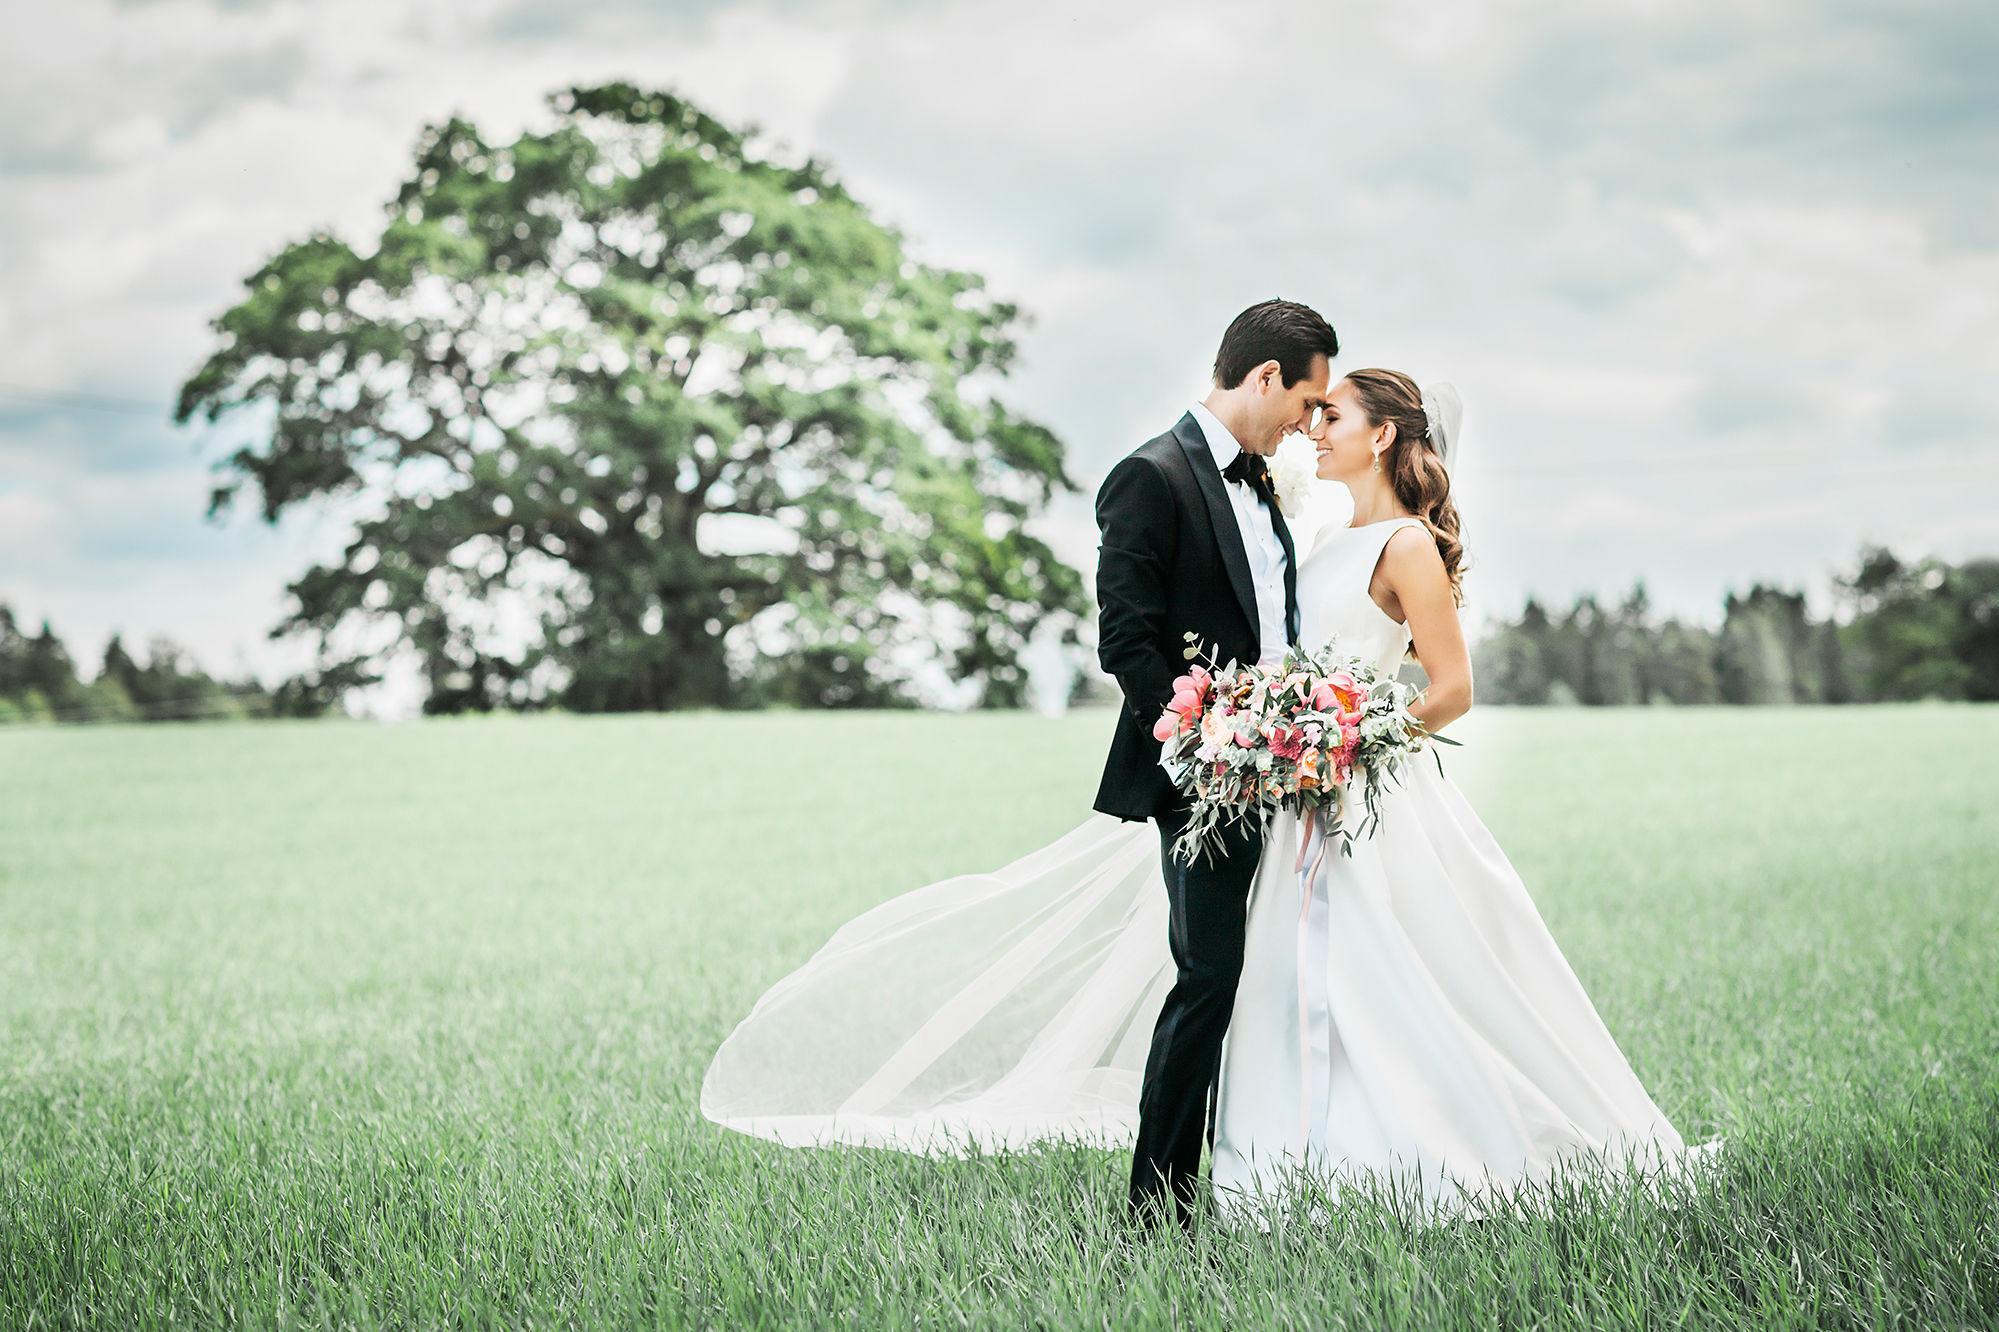 FRESHT: Bruden glammet opp antrekket med en stor, fargerik bukett. Foto: Anne-Margrethe Photography